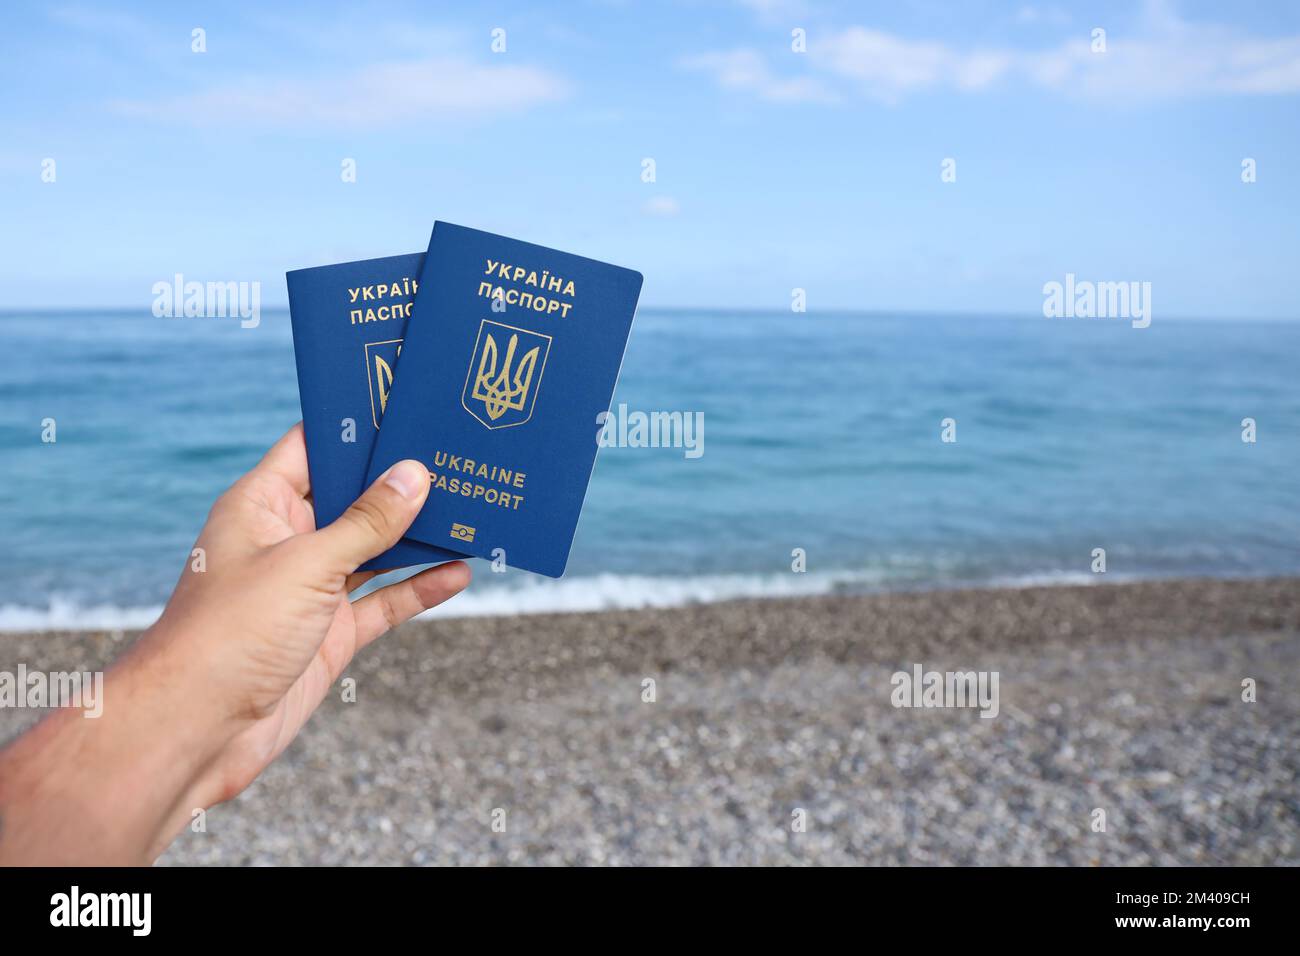 Mit dem neuen biometrischen ukrainischen Reisepass können Sie ohne Visum in europäische Urlaubsländer der Europäischen Union reisen. Visafreies elektronisches ausweisdokument. Ukrainer bekommen neue internationale Pässe Stockfoto